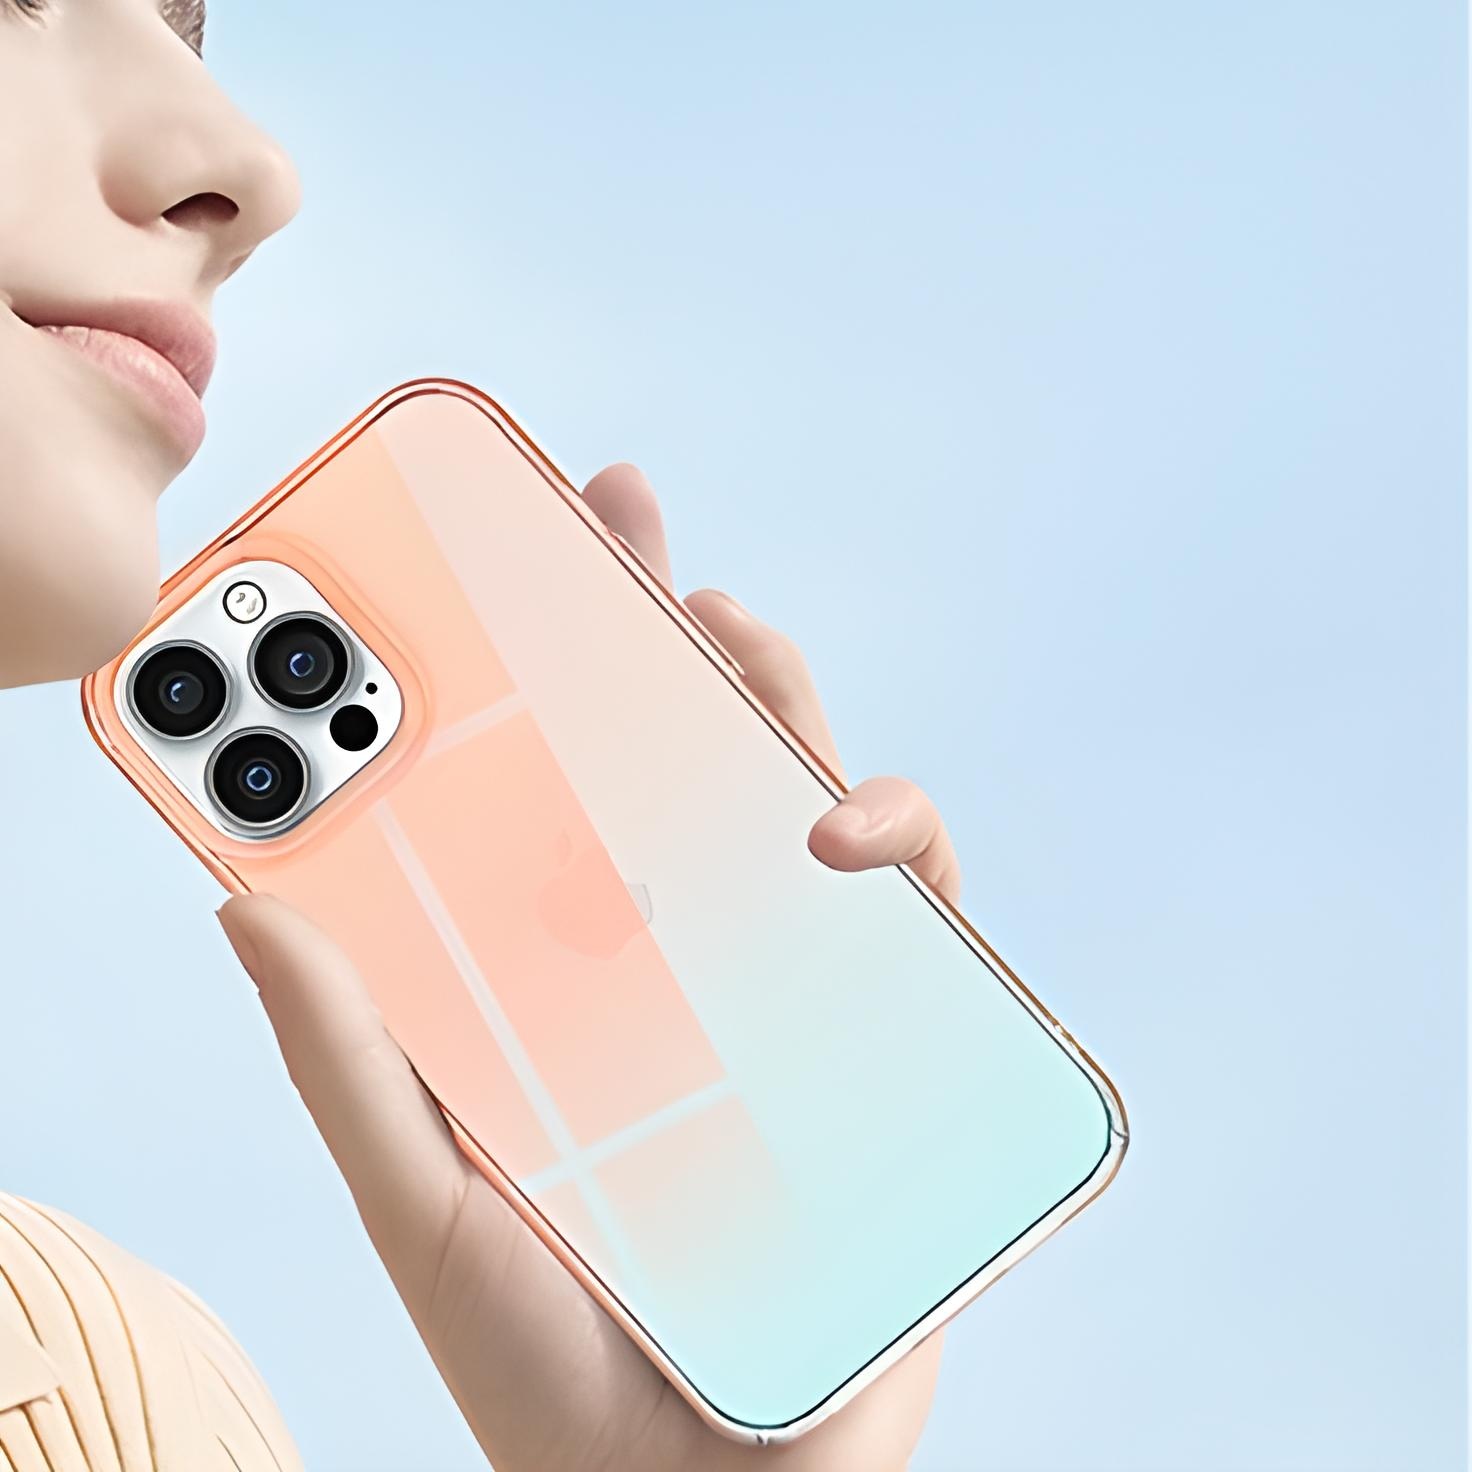 Hình ảnh Ốp lưng chống sốc đổi màu cho iPhone 14 Pro Max (6.7 inch) hiệu Memumi Rainbow Iridescent Case thiết kế mặt lưng đổi màu theo góc nhìn, chống sốc cực tốt, chất liệu cao cấp - hàng nhập khẩu